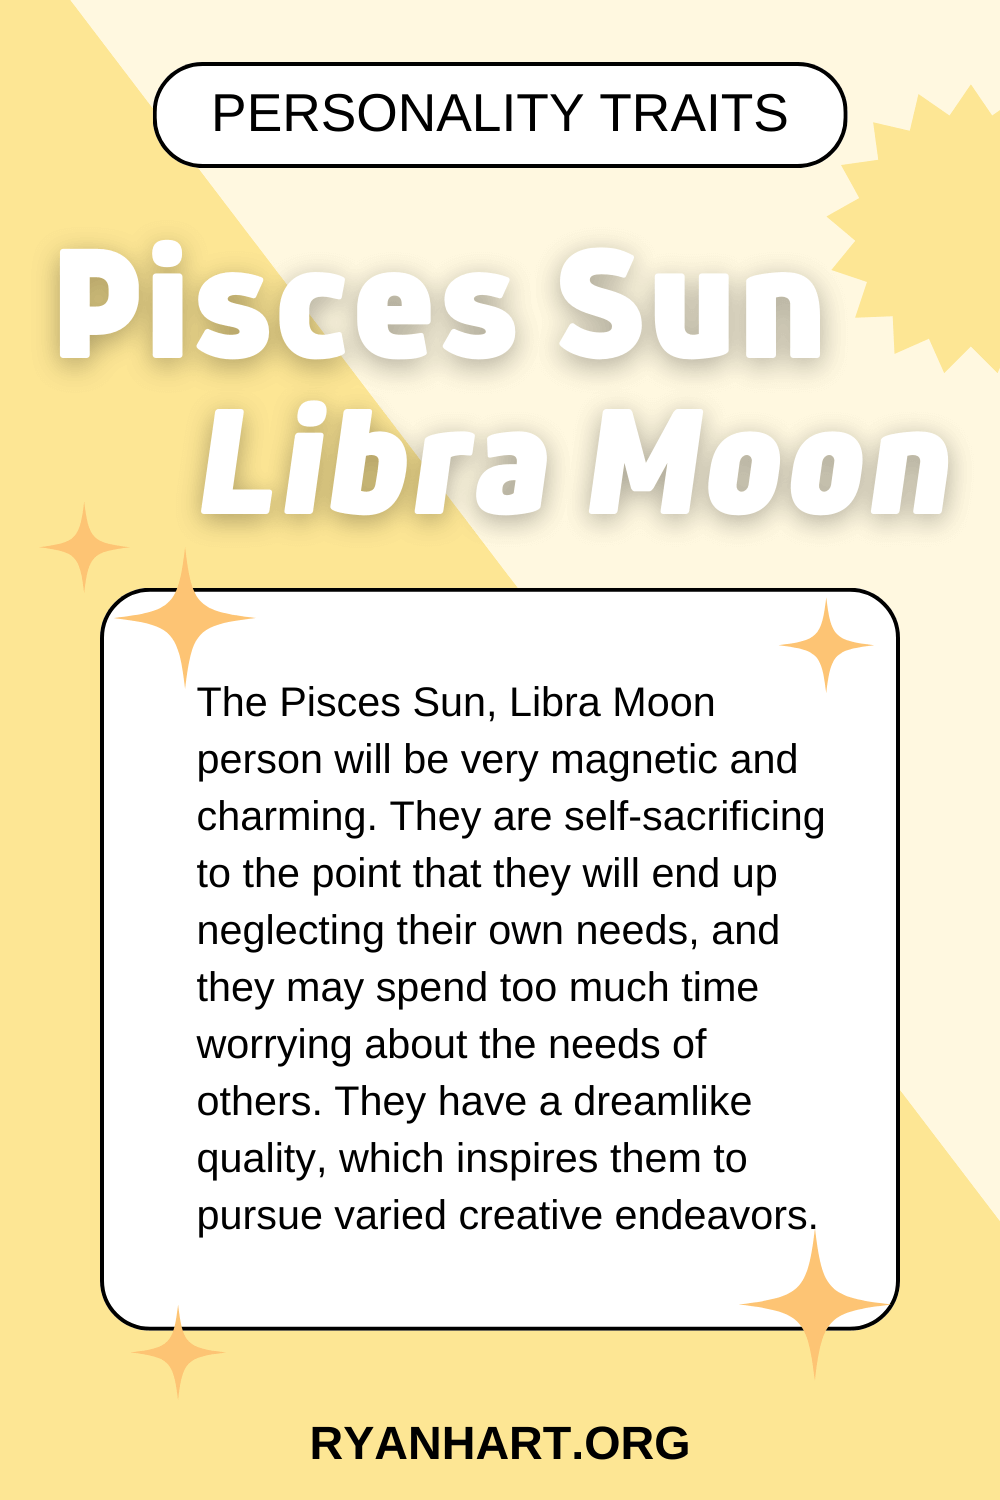 Pisces Sun Libra Moon Description